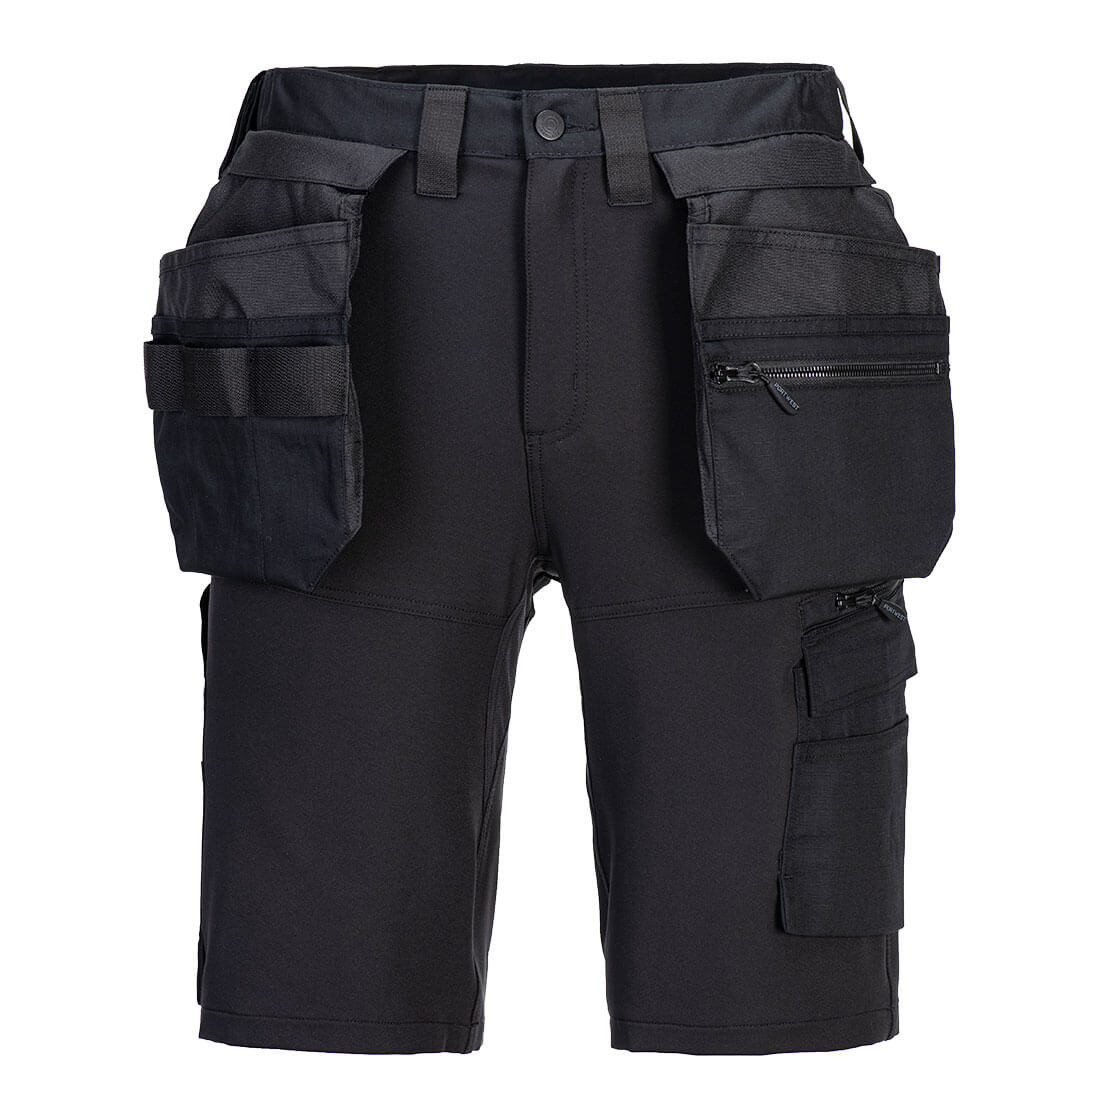 Pantaloni scurți DX4 cu buzunare Holster - Imbracaminte de protectie